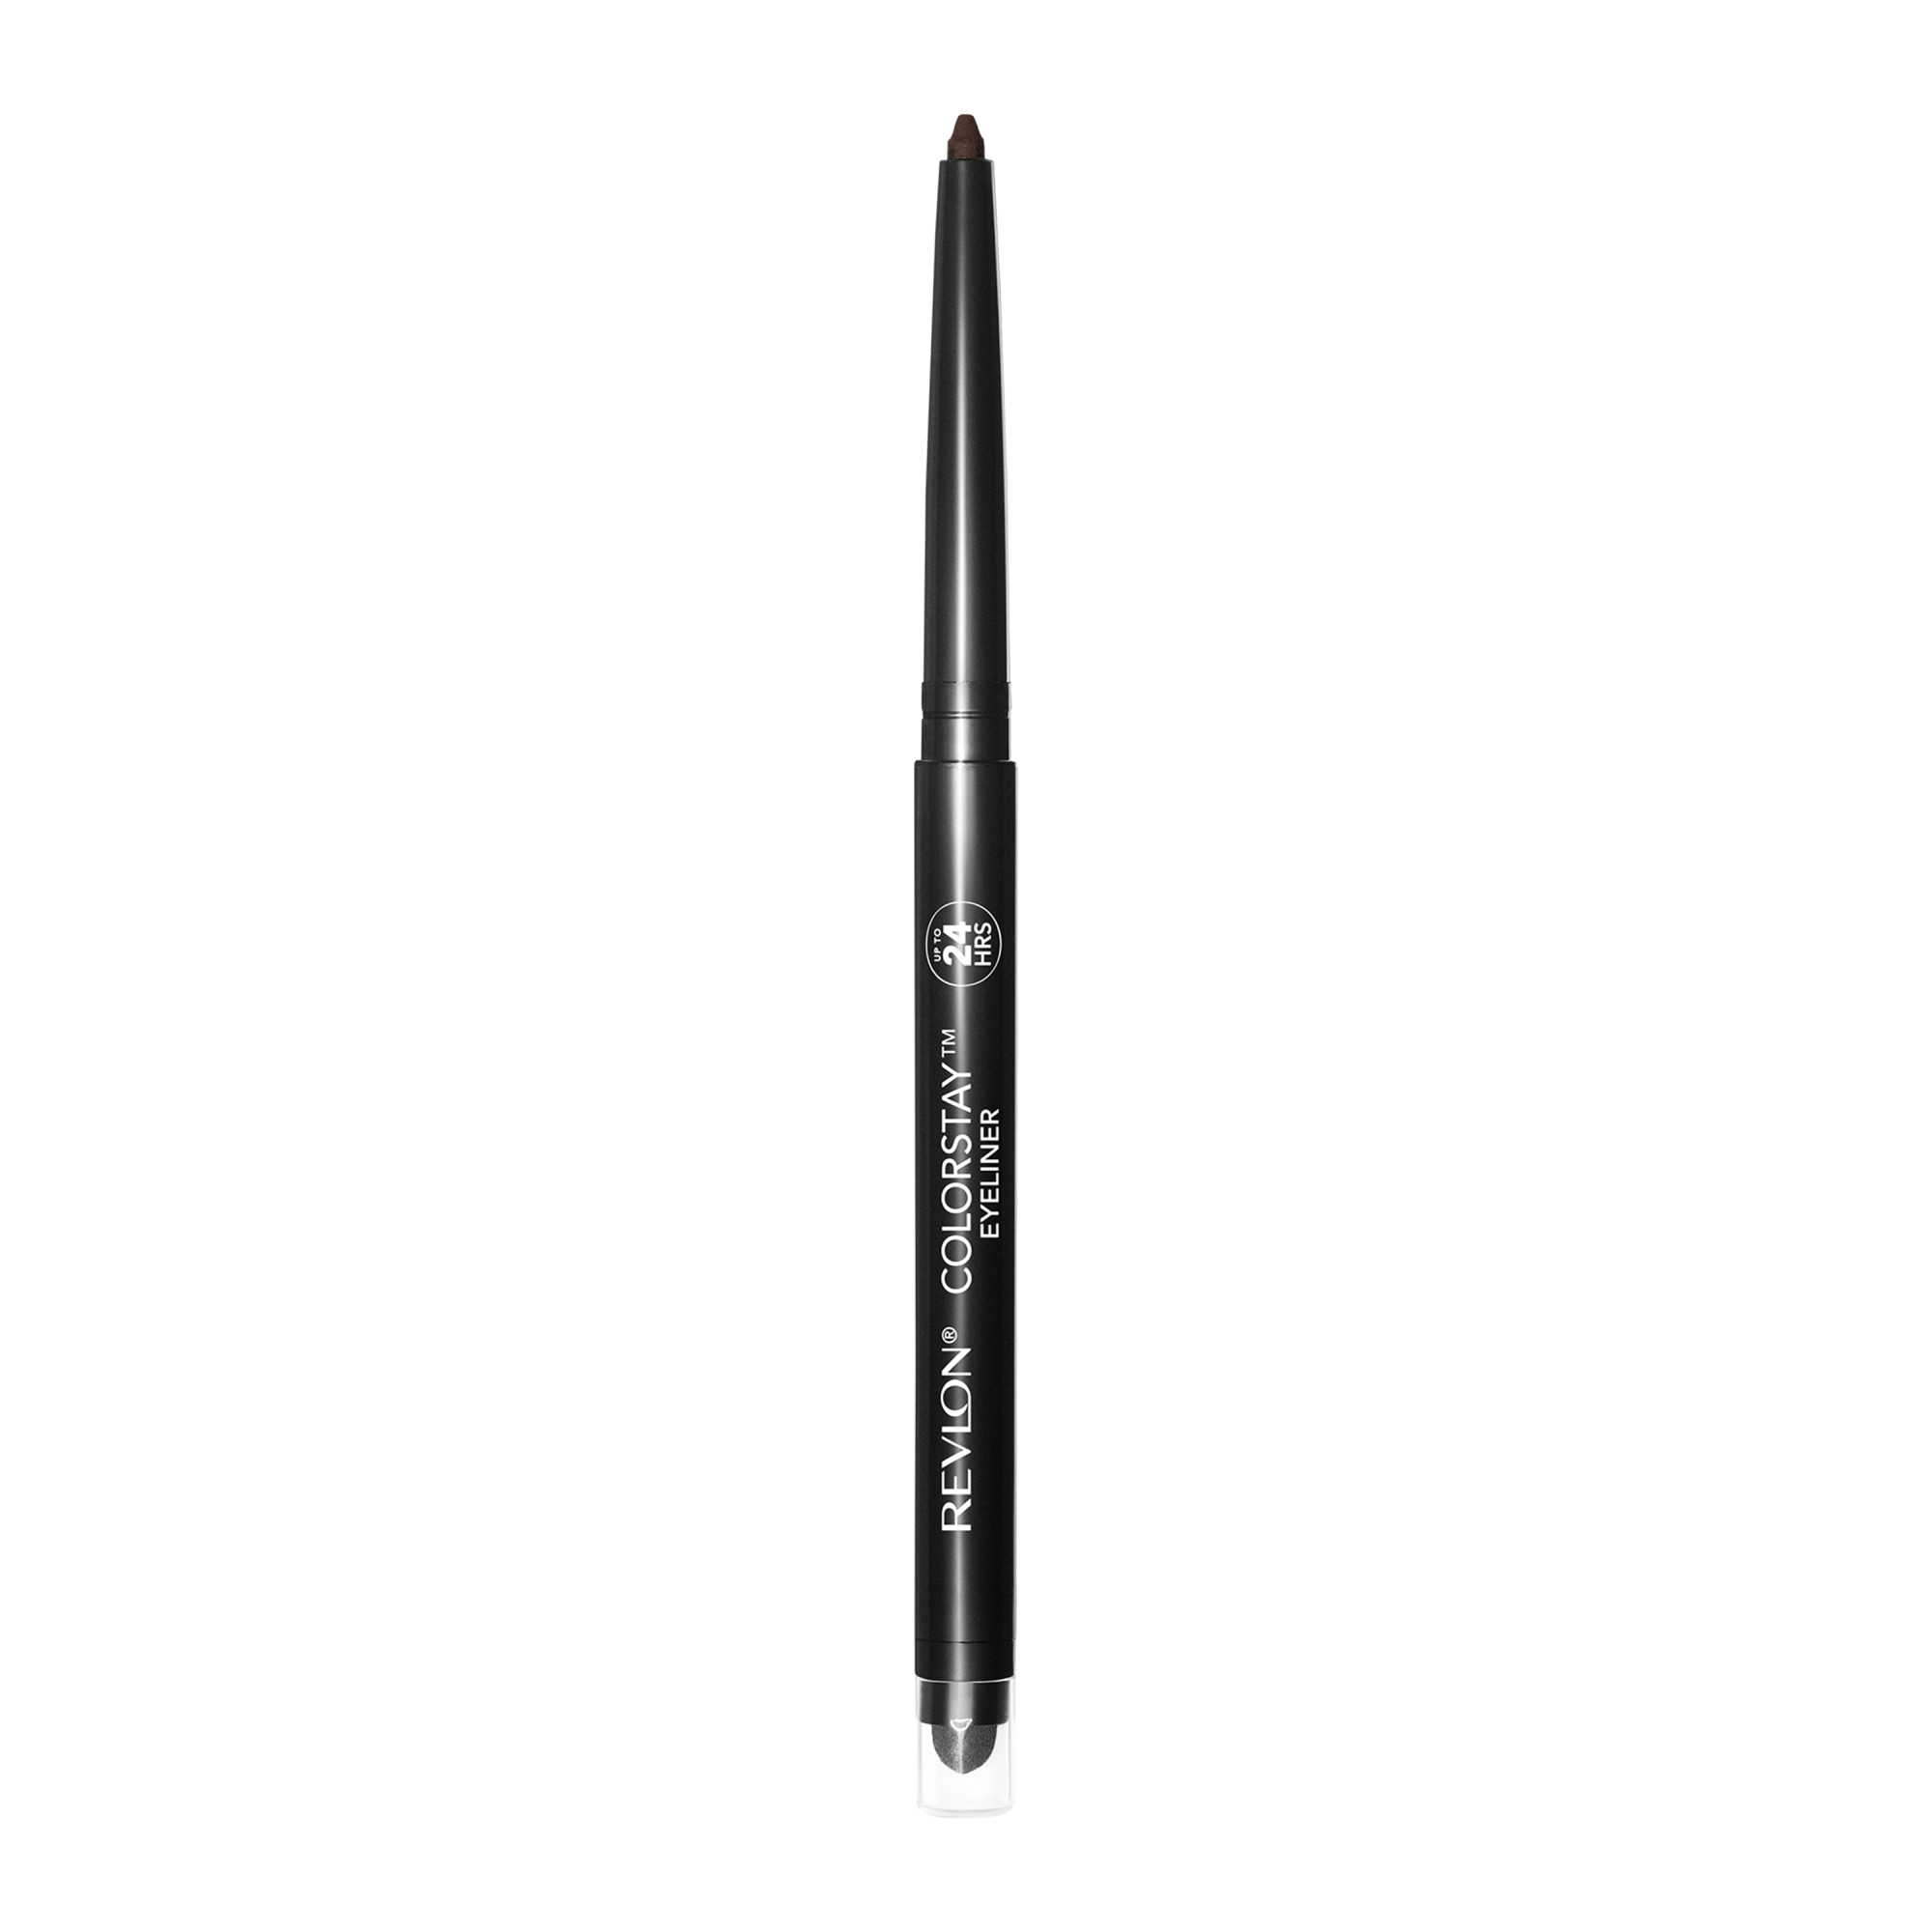 Revlon ColorStay Waterproof Eyeliner Pencil, 24HR Wear, Built-in Sharpener, 202 Black Brown, 0.01 oz - image 3 of 9